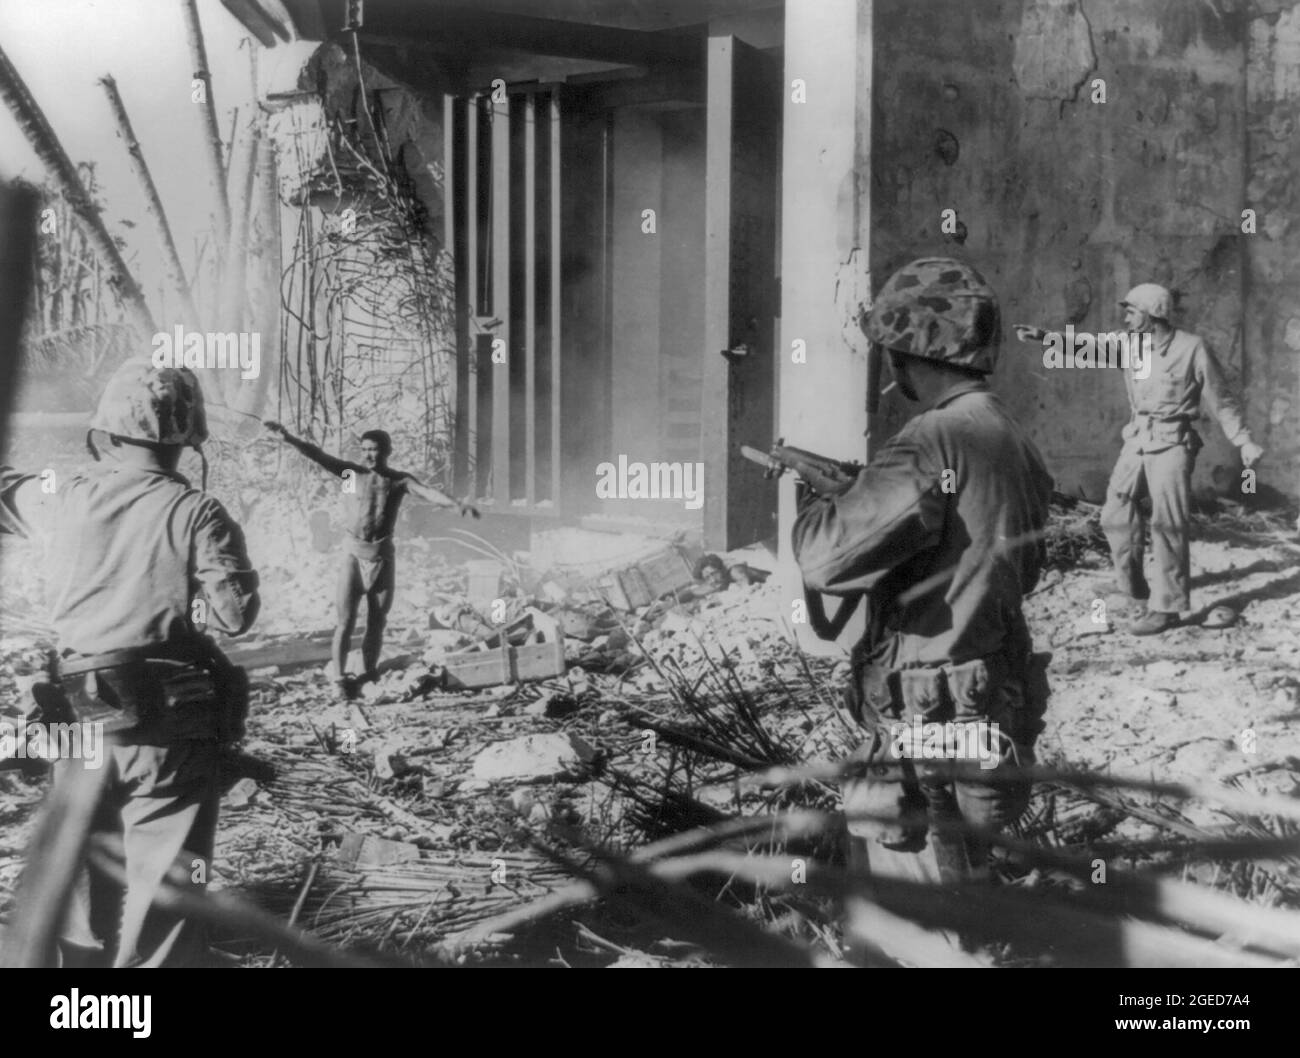 Isole MARSHALL - 02 febbraio 1944 - Soldato giapponese che si arrenderà a tre soldati statunitensi nelle Isole Marshall - Foto: Geopix/J Fabian Foto Stock